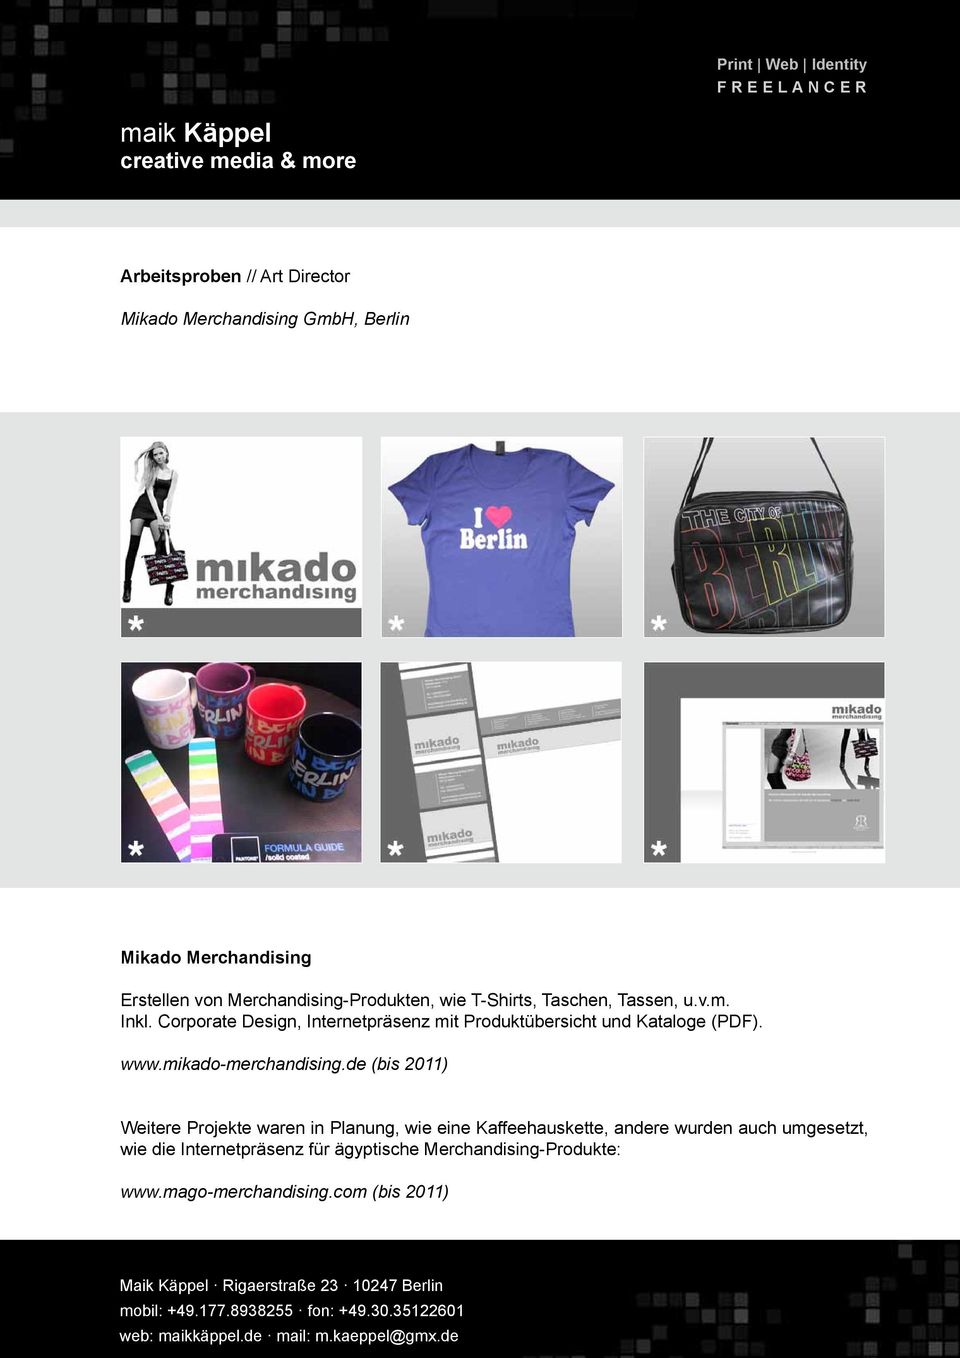 Corporate Design, Internetpräsenz mit Produktübersicht und Kataloge (PDF). www.mikado-merchandising.